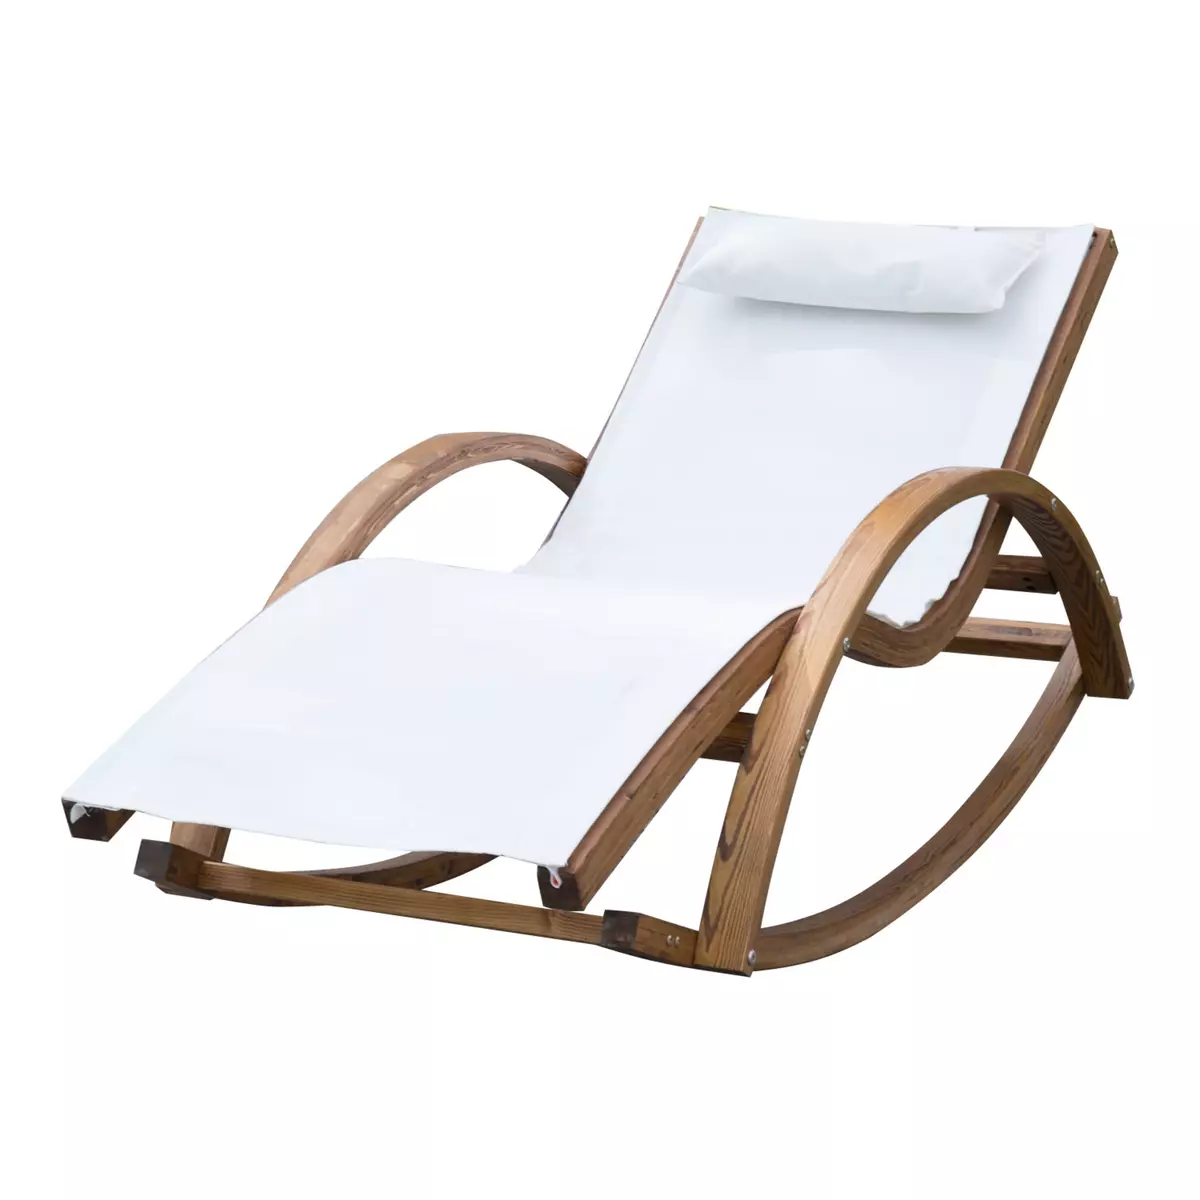 OUTSUNNY Chaise longue fauteuil berçant à bascule transat bain de soleil rocking chair en bois charge 120 Kg blanc